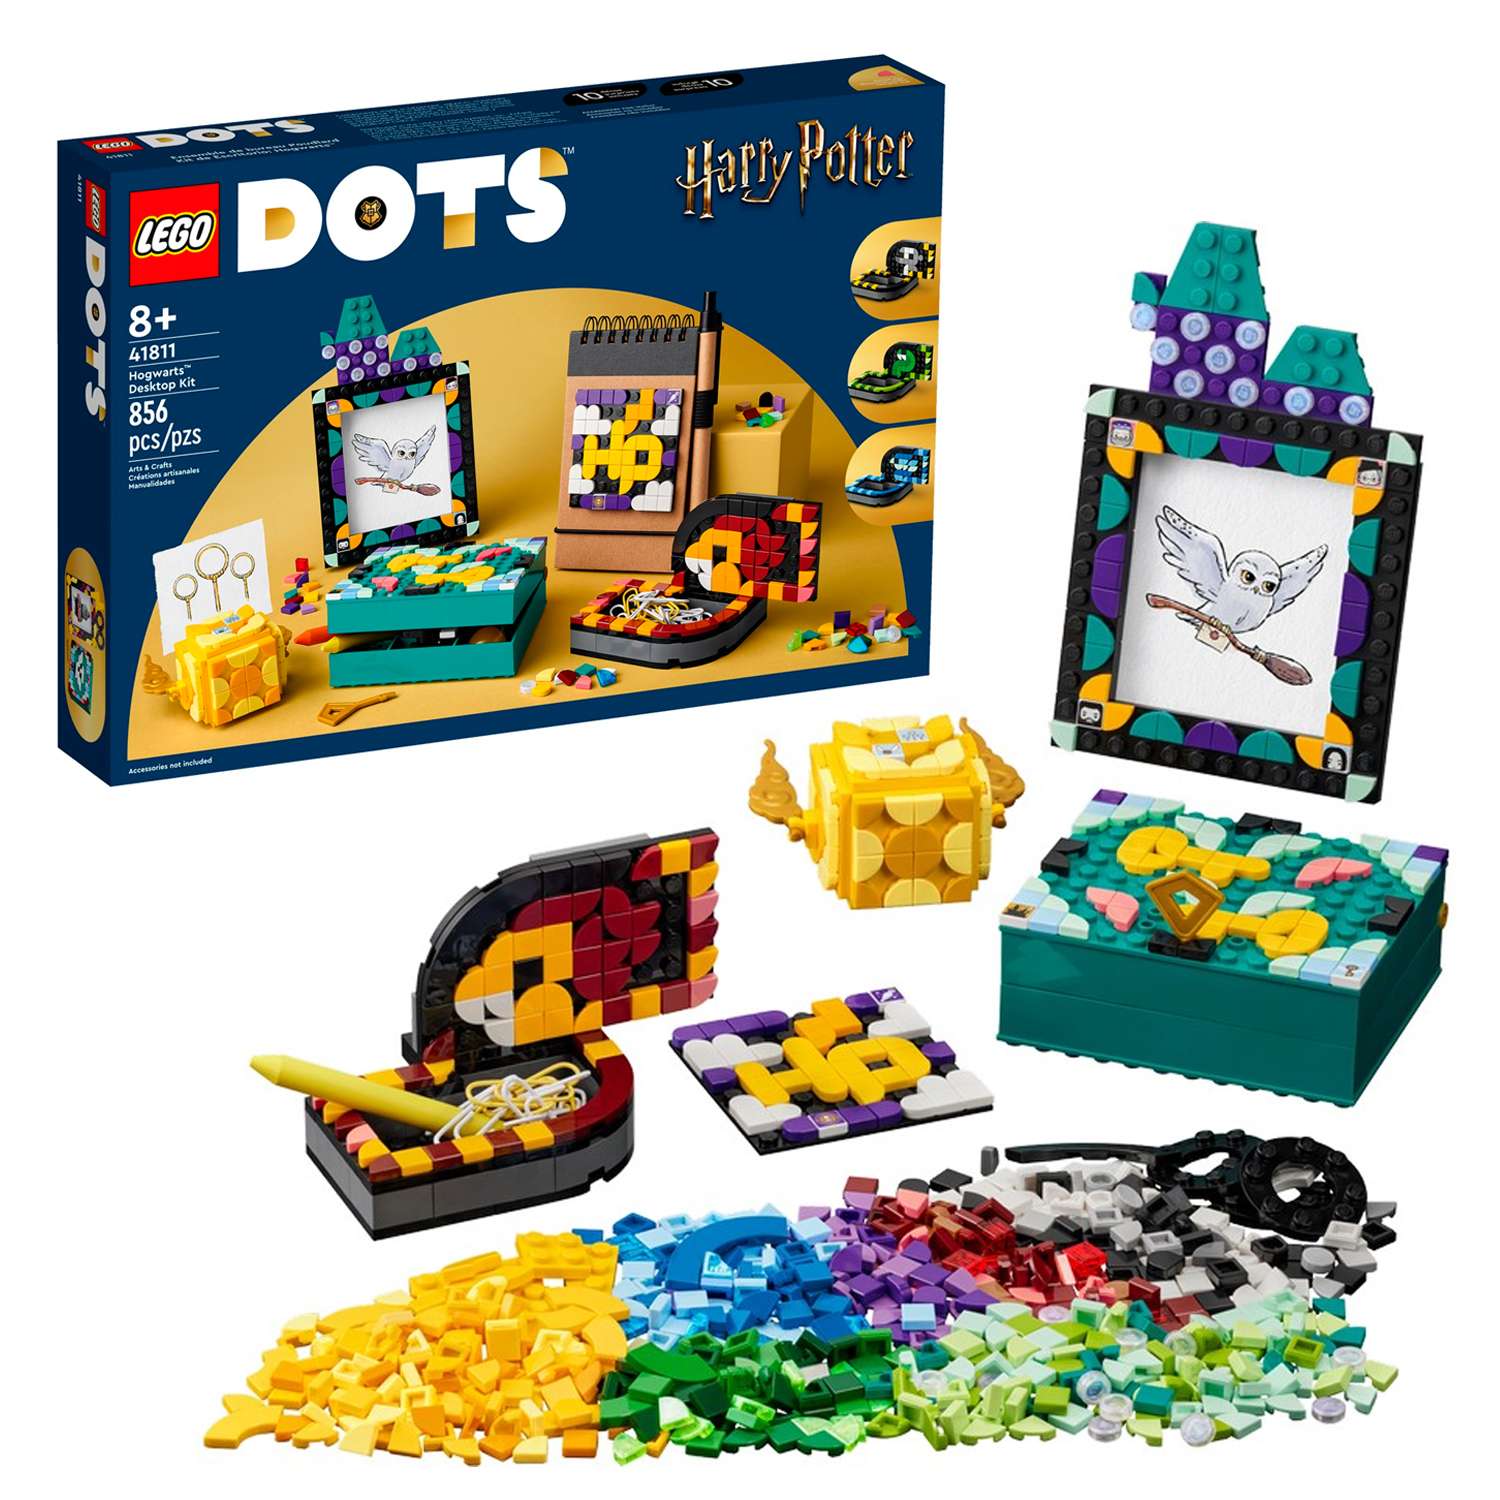 Конструктор детский LEGO Dots Настольный комплект Хогвартс 41811 - фото 1